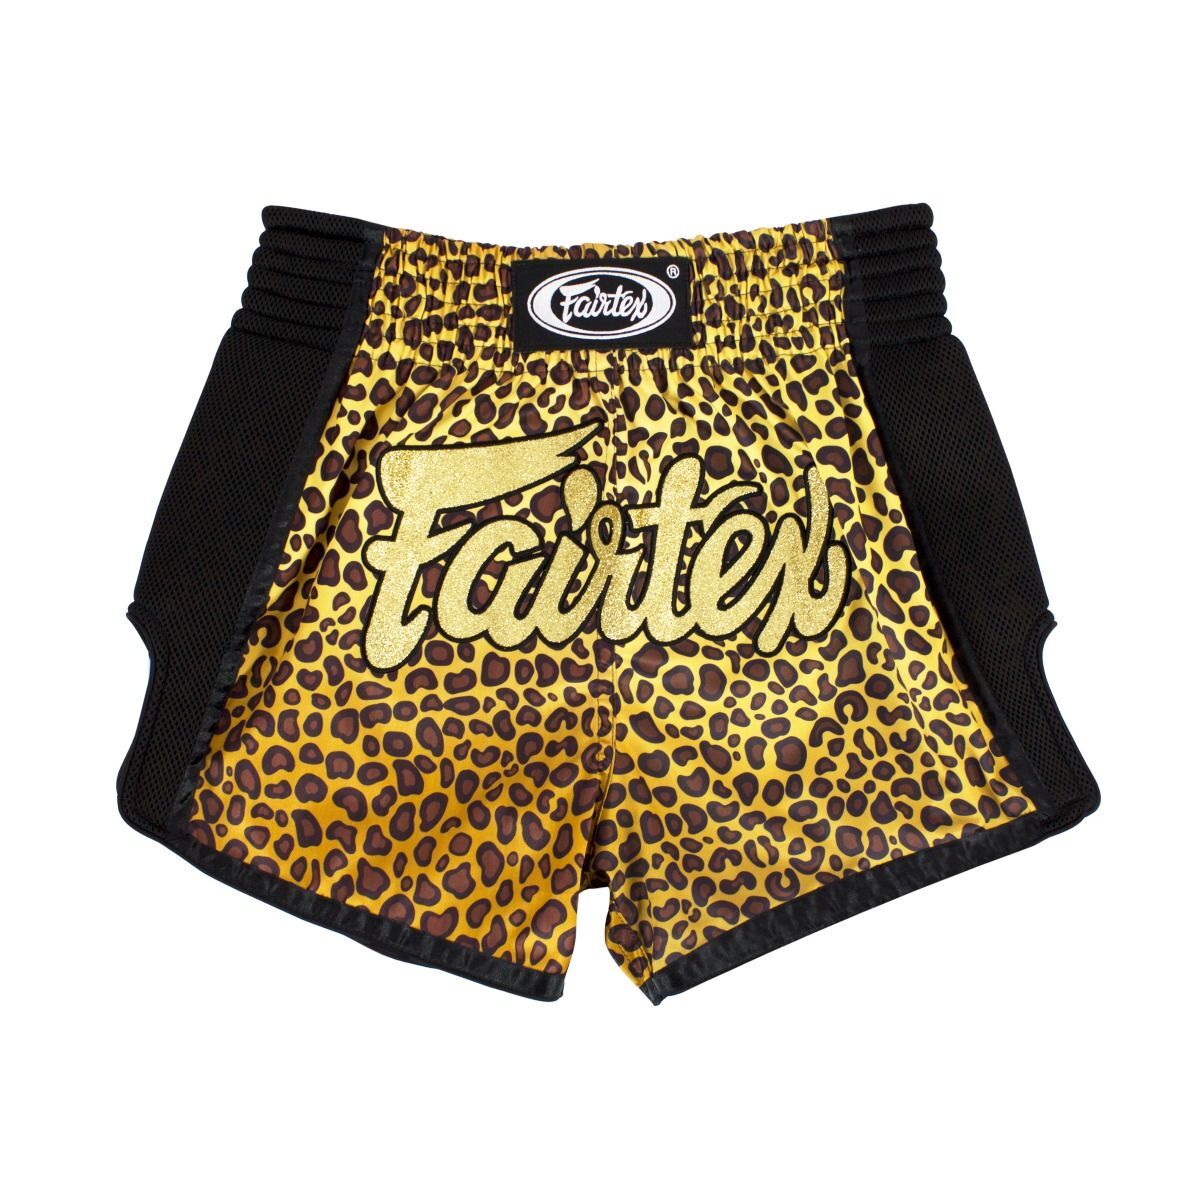 FAIRTEX - Leopard Slim Cut Muay Thai Boxing Shorts (BS1709) - Small